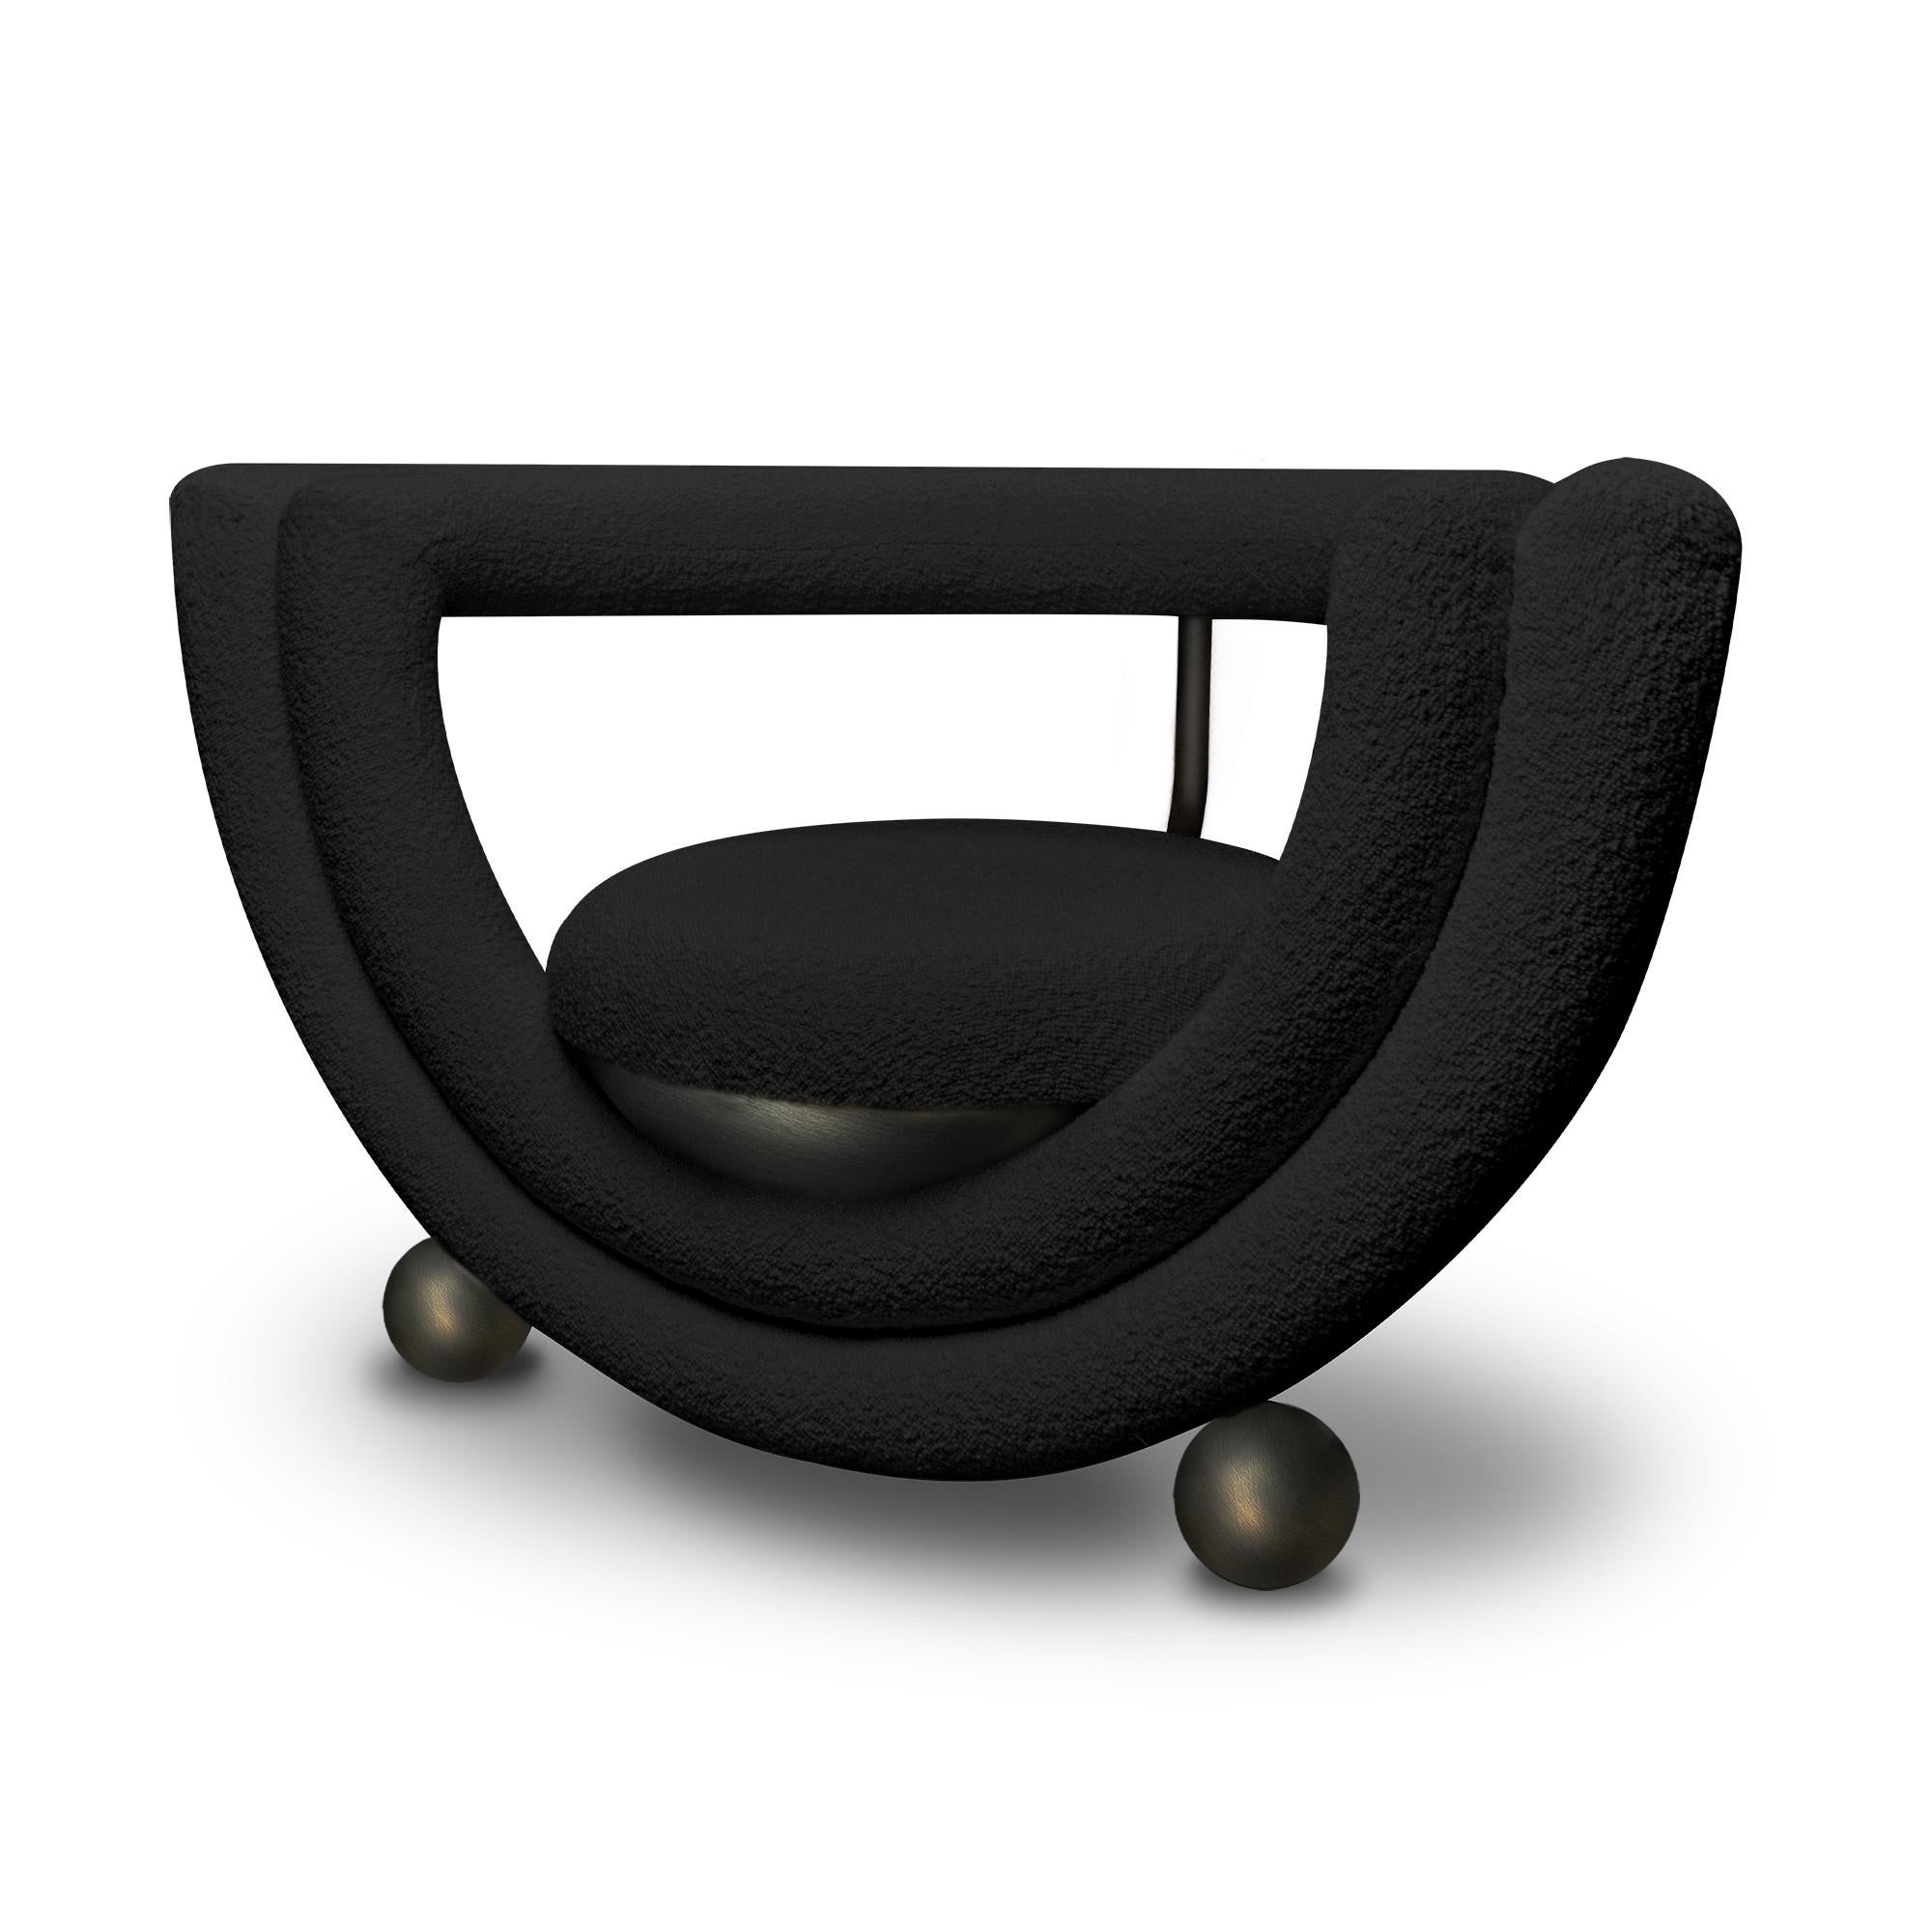 Der Sessel Kissing besteht aus zwei halbkreisförmigen Schichten, von denen die eine die schalenförmige Sitzfläche und die andere die Rückenlehne bildet. Alle Linien sind mit einer weichen Polsterung überzogen, abgesehen von den Metallbeinen und den